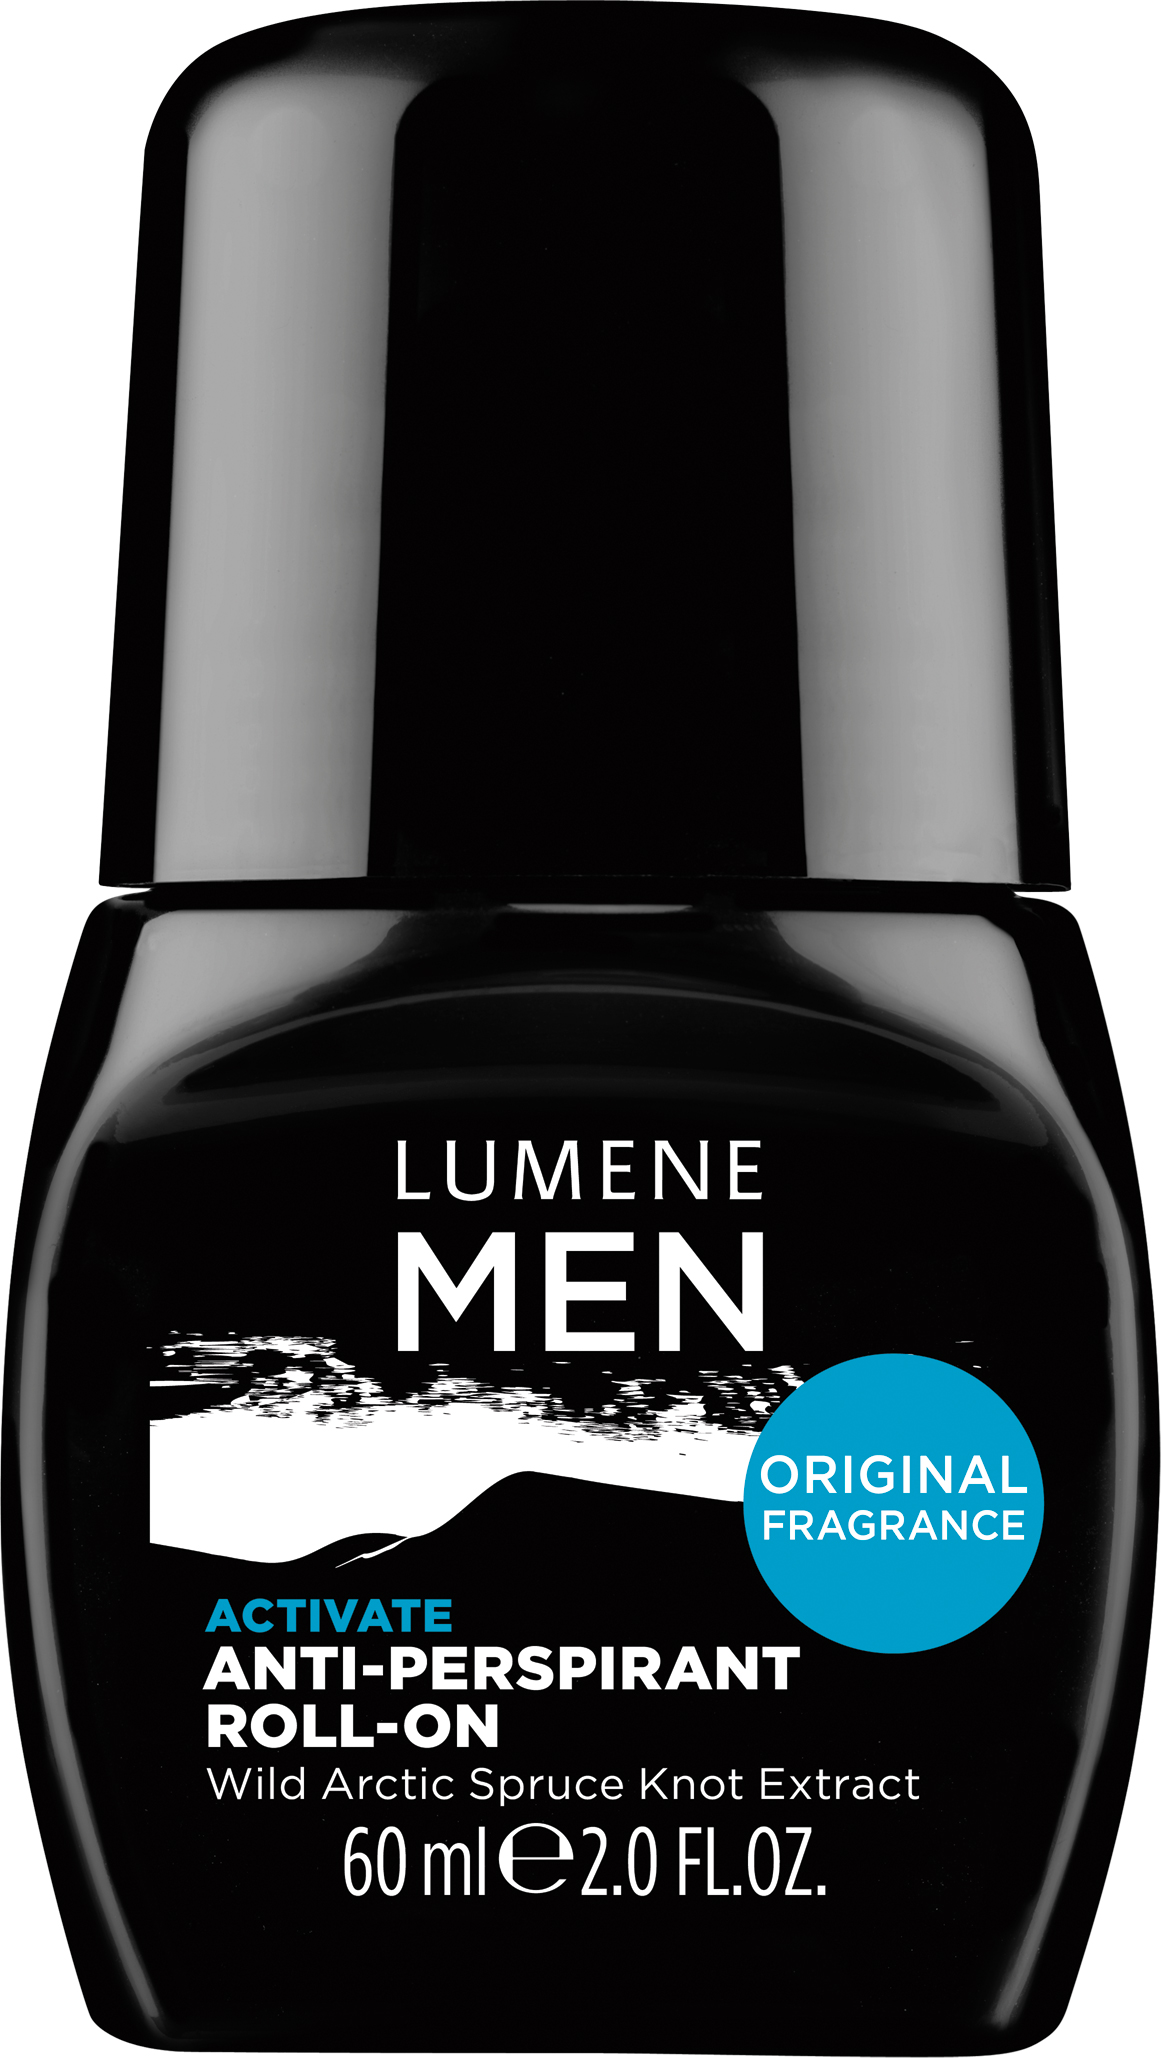 Lumene For Men Activate Roll-on Antiperspirant 60ml